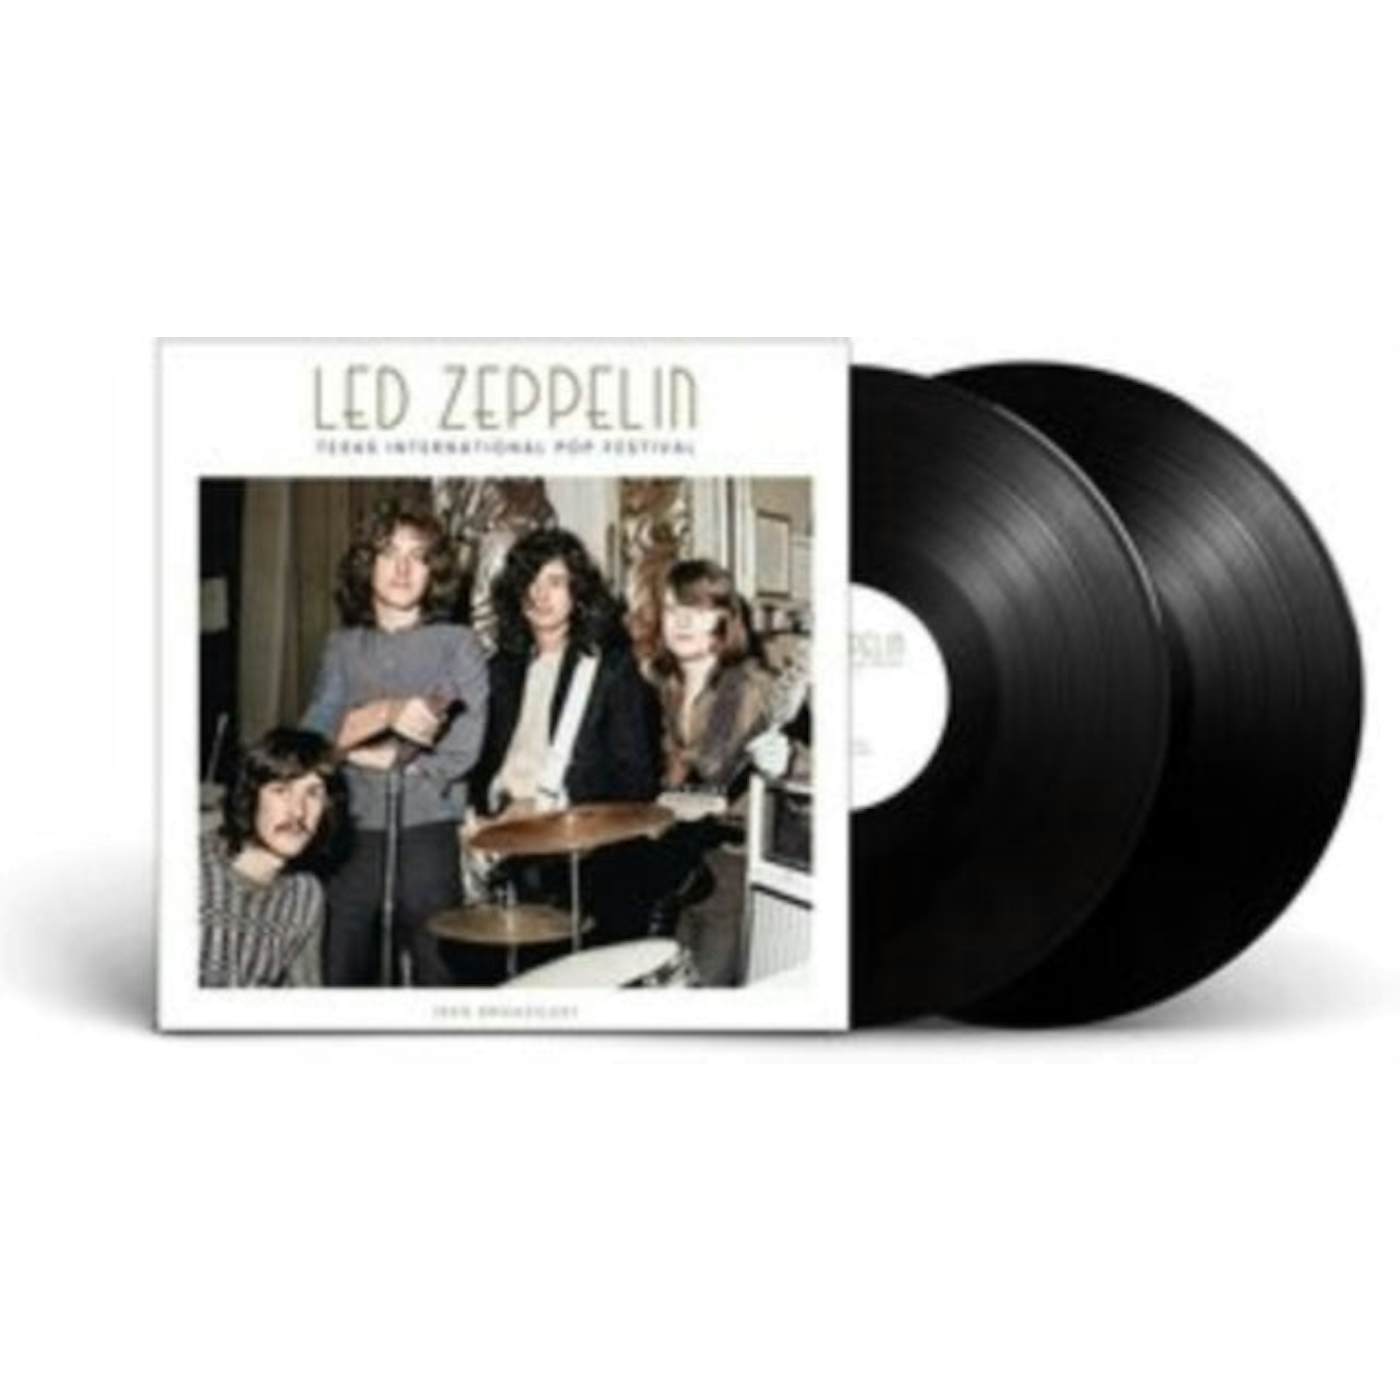 Led Zeppelin LP - Texas International Pop Festival (Vinyl)